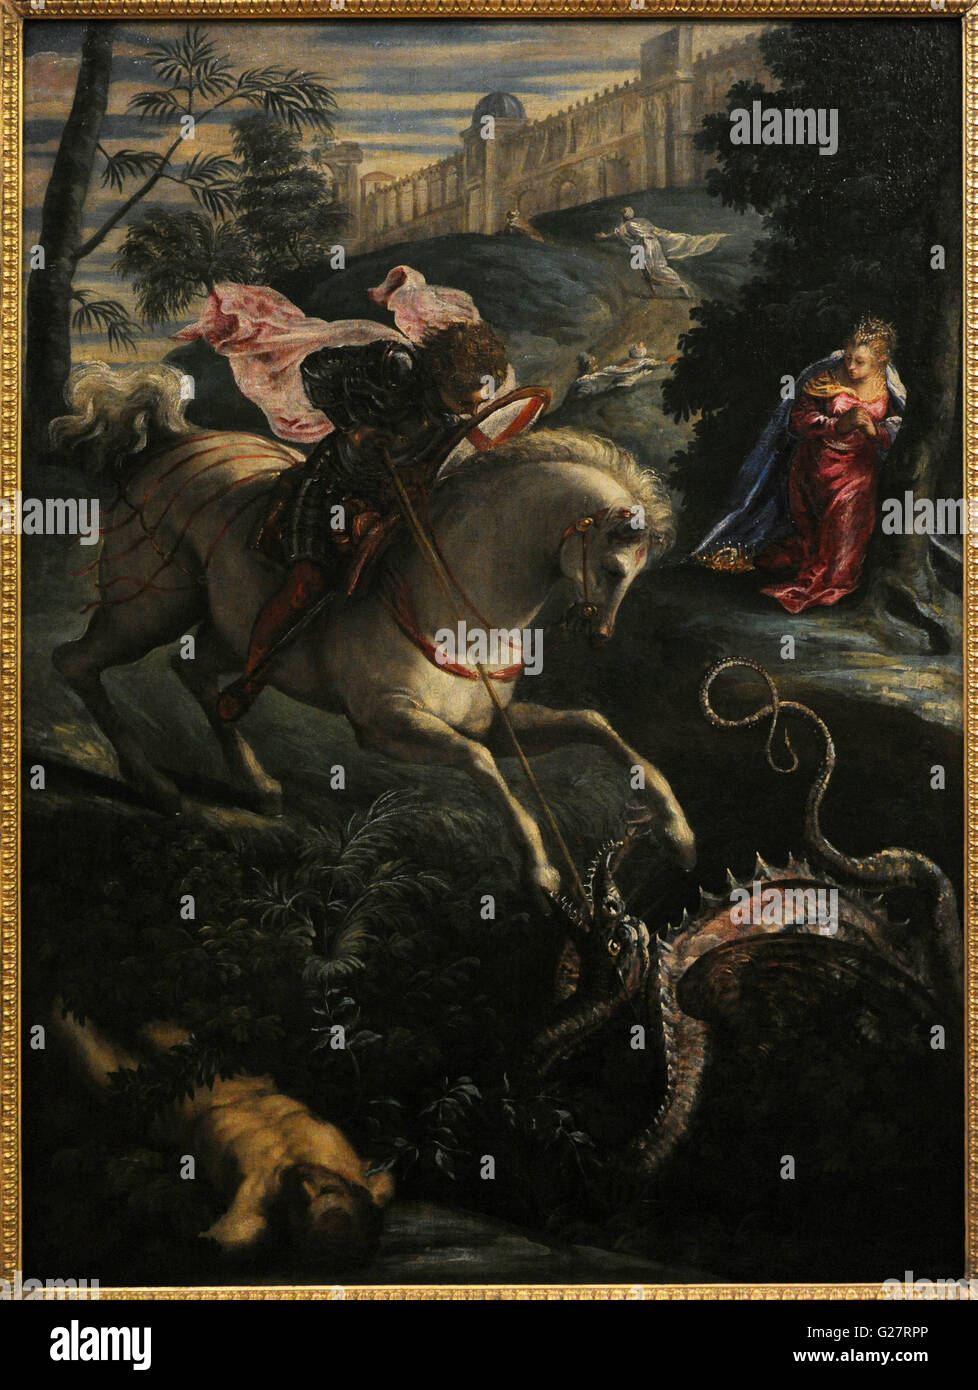 Tintoretto (1518-1594), nato Jacopo Comin e noto anche come Jacopo Robusti. Italiano pittore rinascimentale. Scuola veneziana. Saint George, 1543-1544. Olio su tela. Lo stato Museo Hermitage. San Pietroburgo. La Russia. Foto Stock